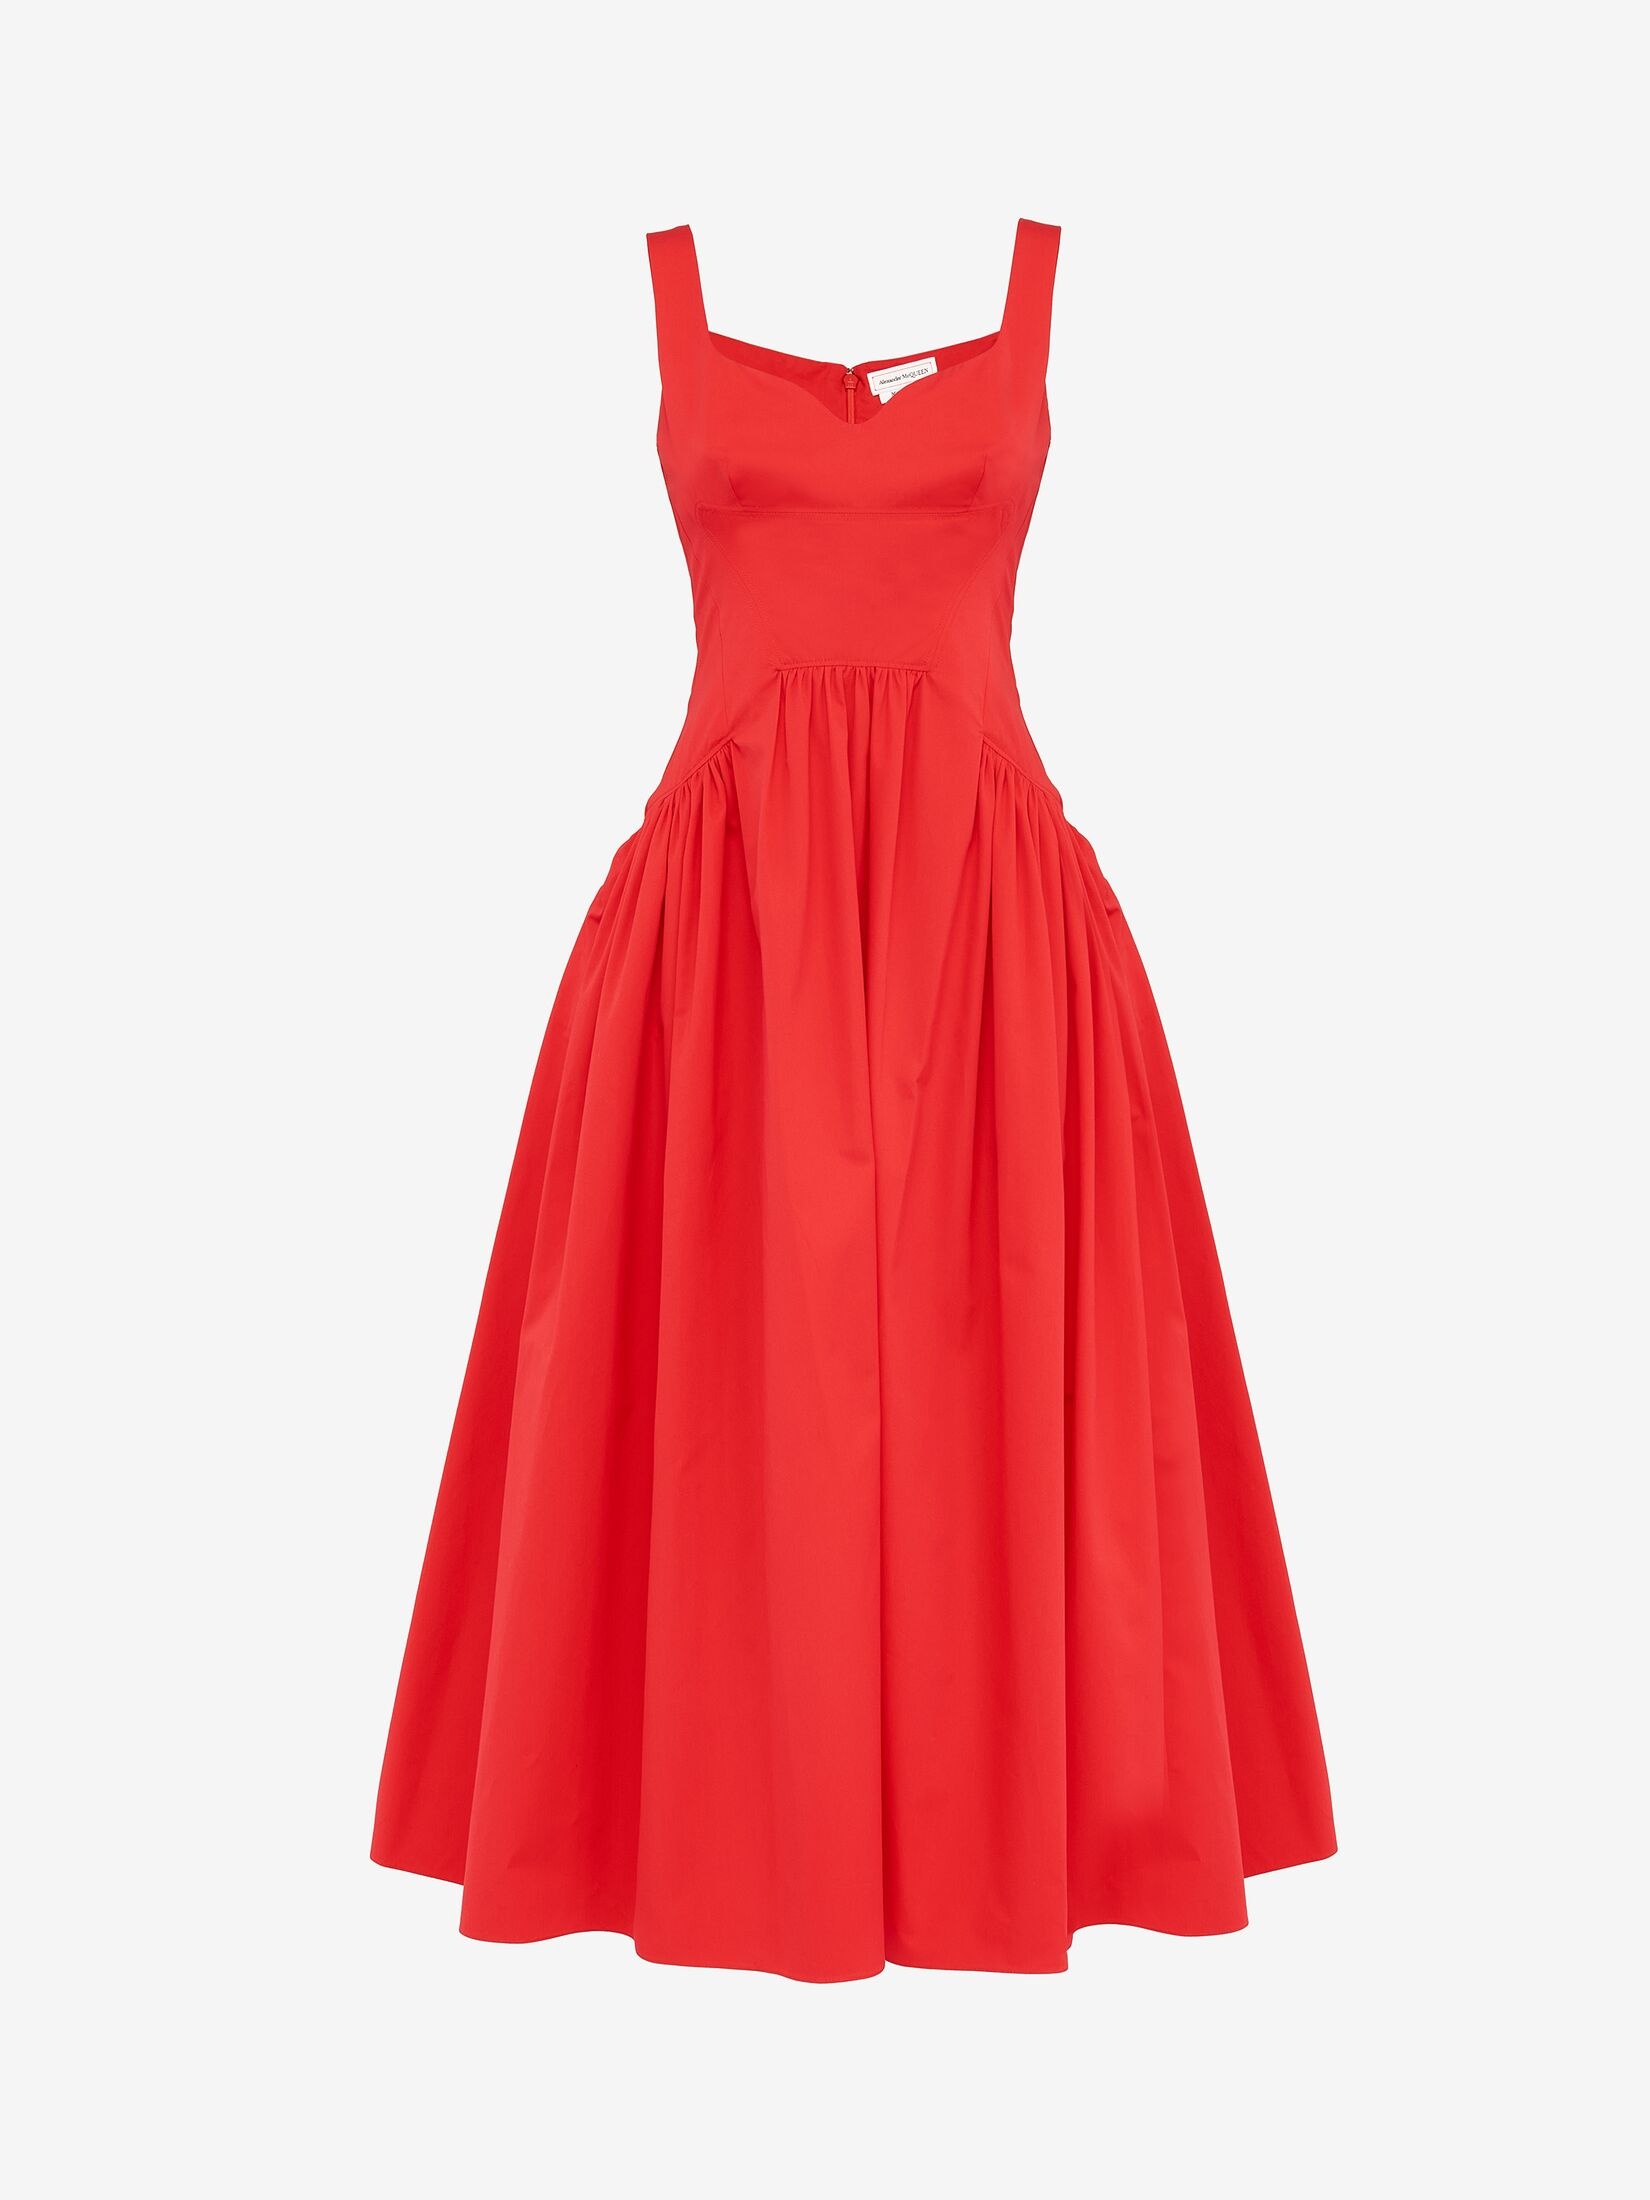 Women's Sweetheart Neckline Midi Dress in Lust Red - 1